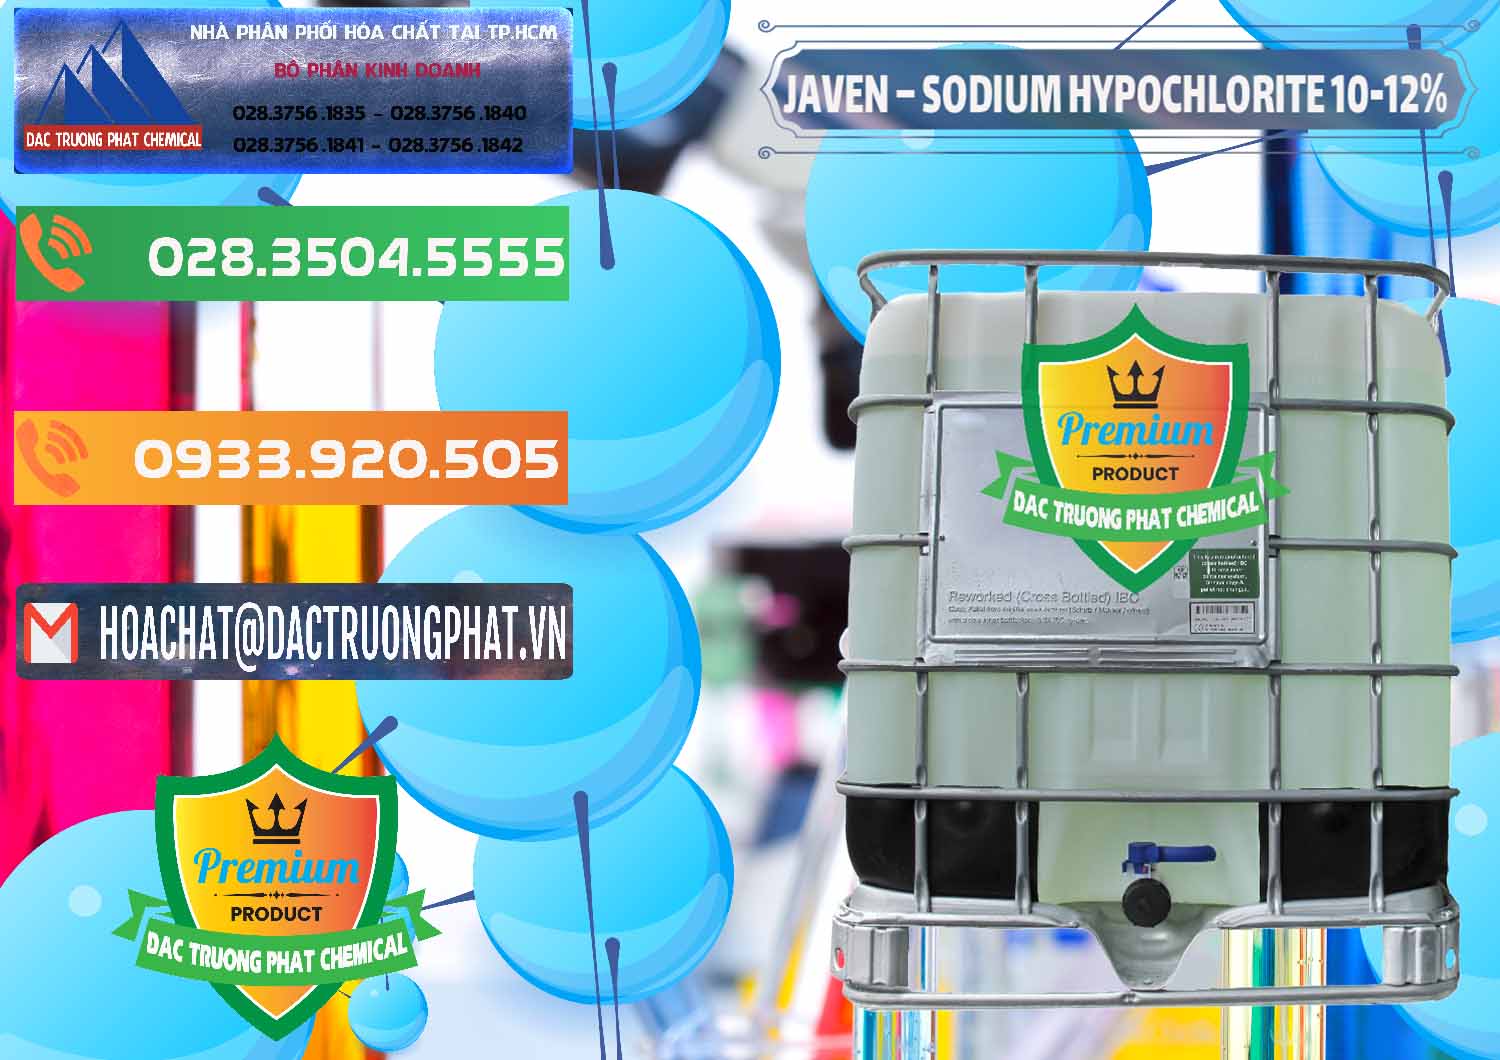 Nhà phân phối _ bán Javen - Sodium Hypochlorite 10-12% Việt Nam - 0188 - Cung ứng và phân phối hóa chất tại TP.HCM - hoachatxulynuoc.com.vn